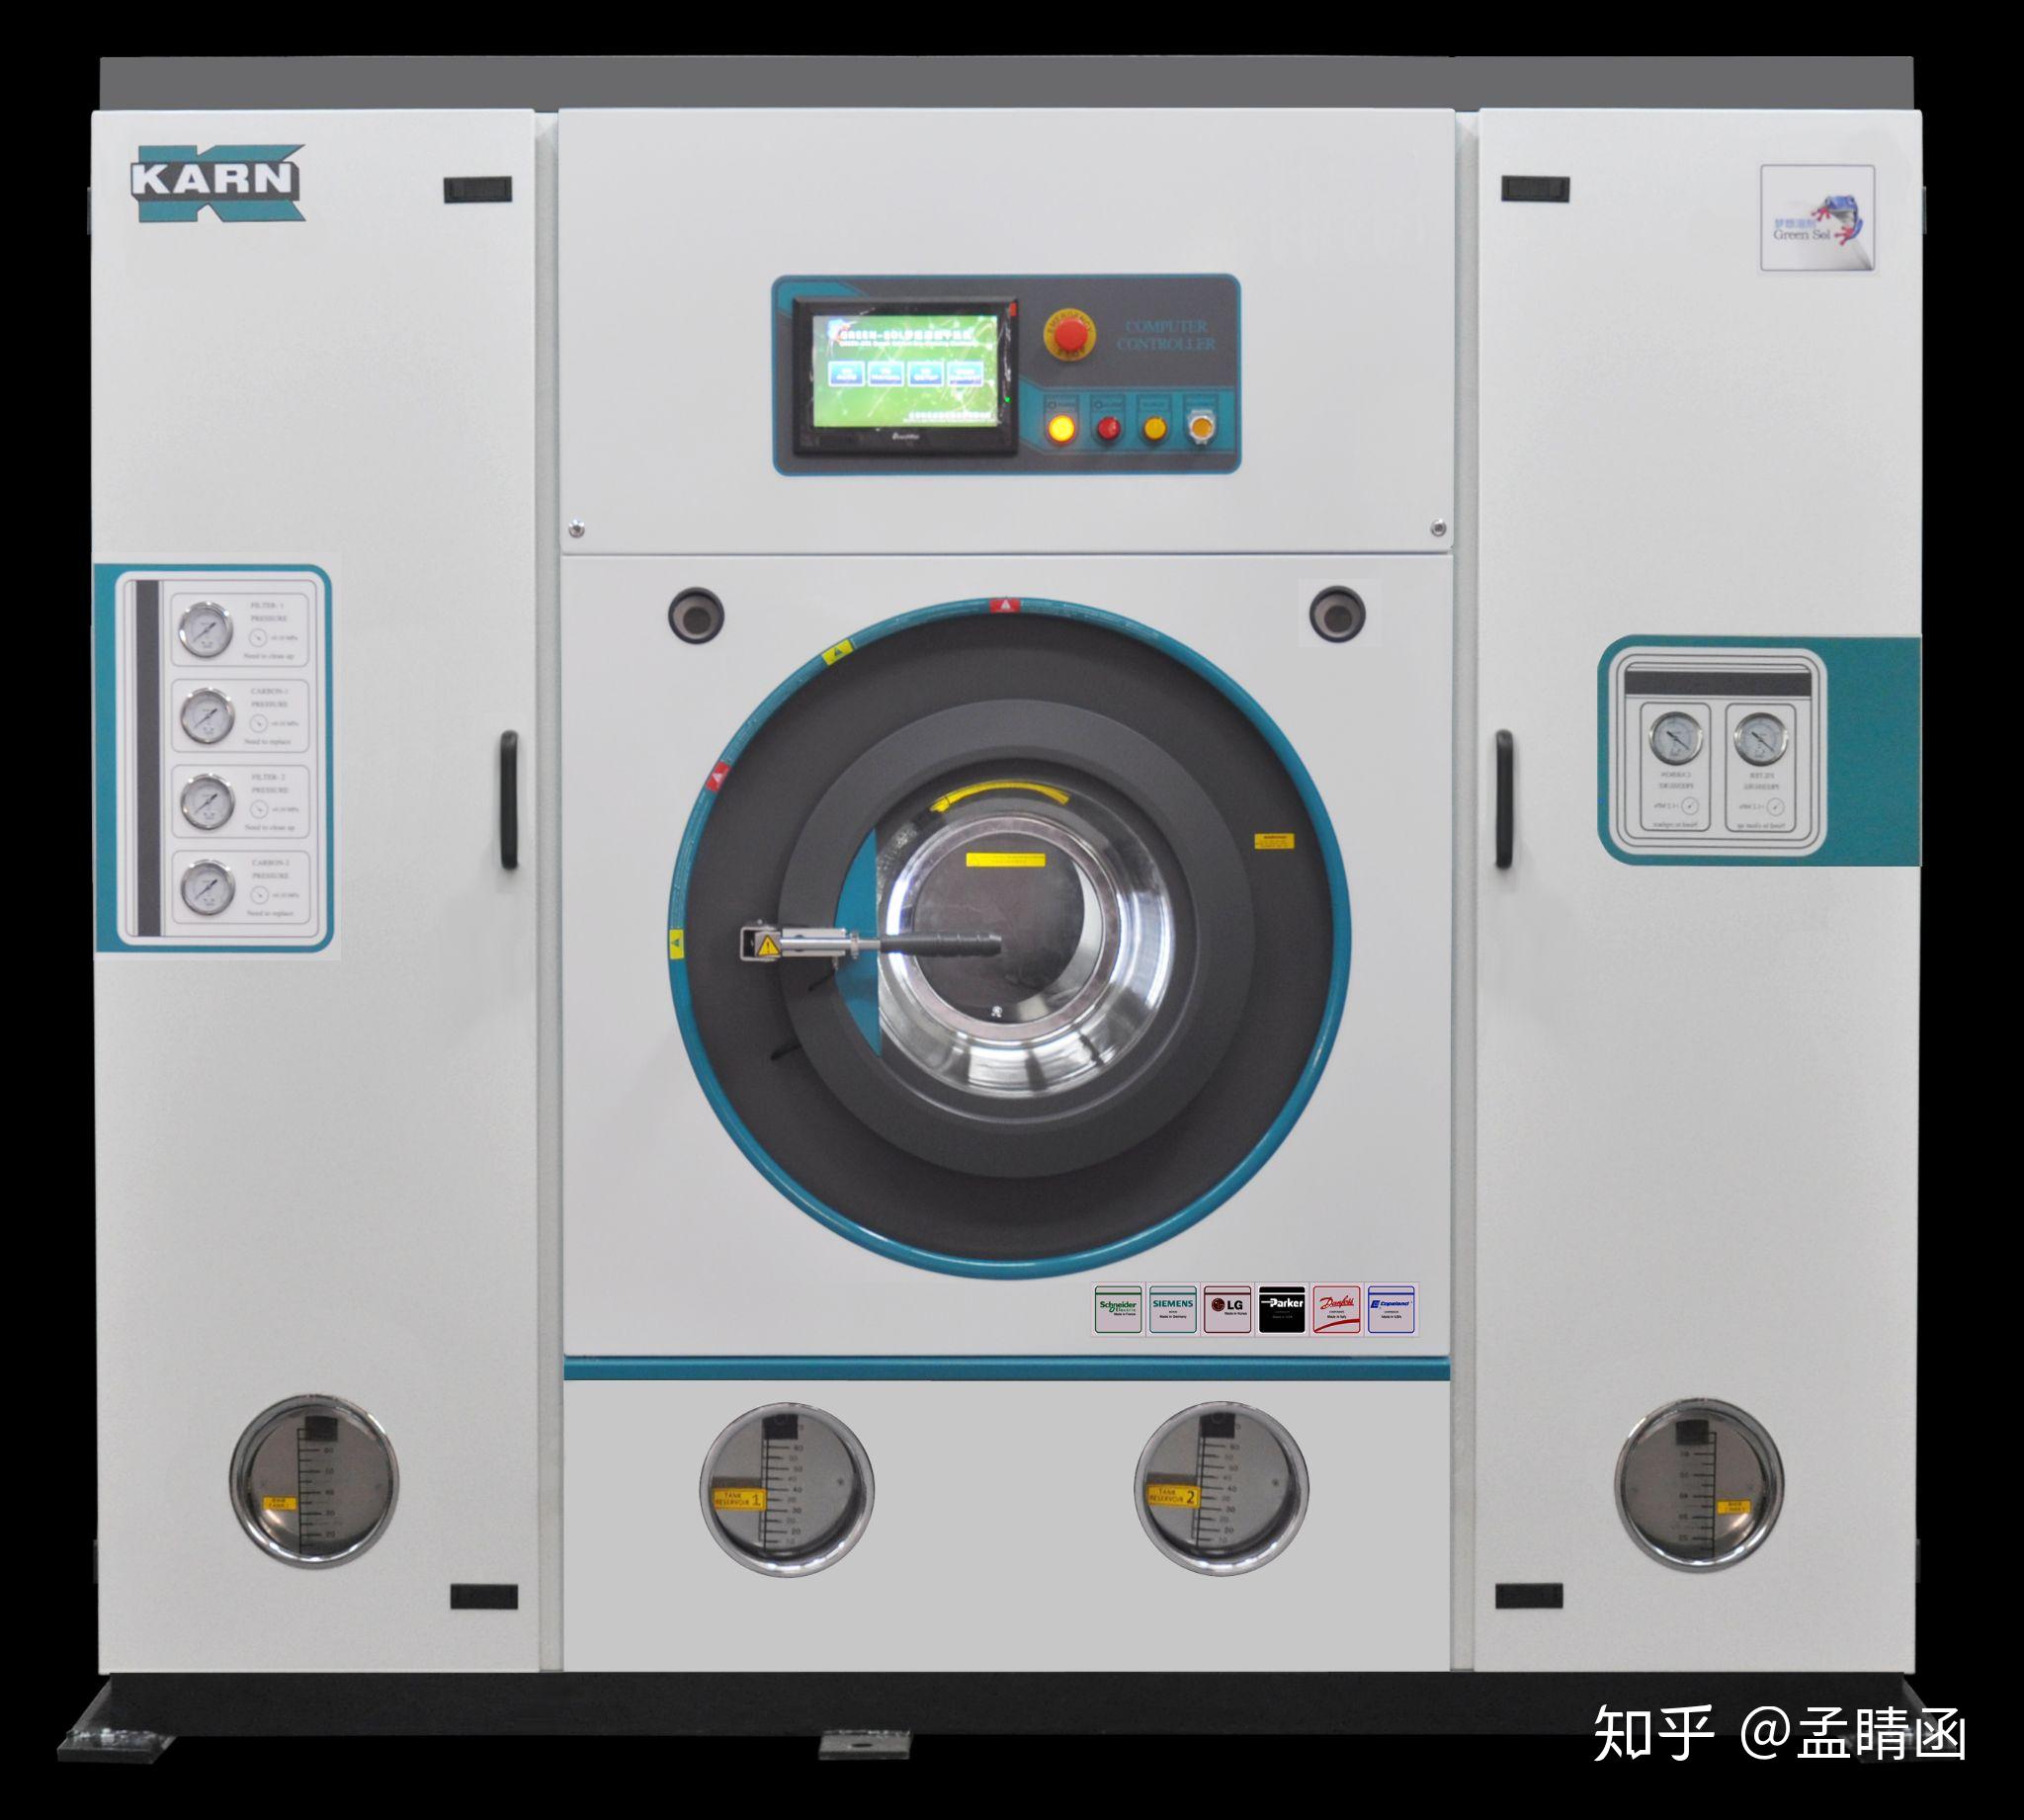 双溶剂干洗机的洗涤范围有哪些?和普通干洗机有什么不同?